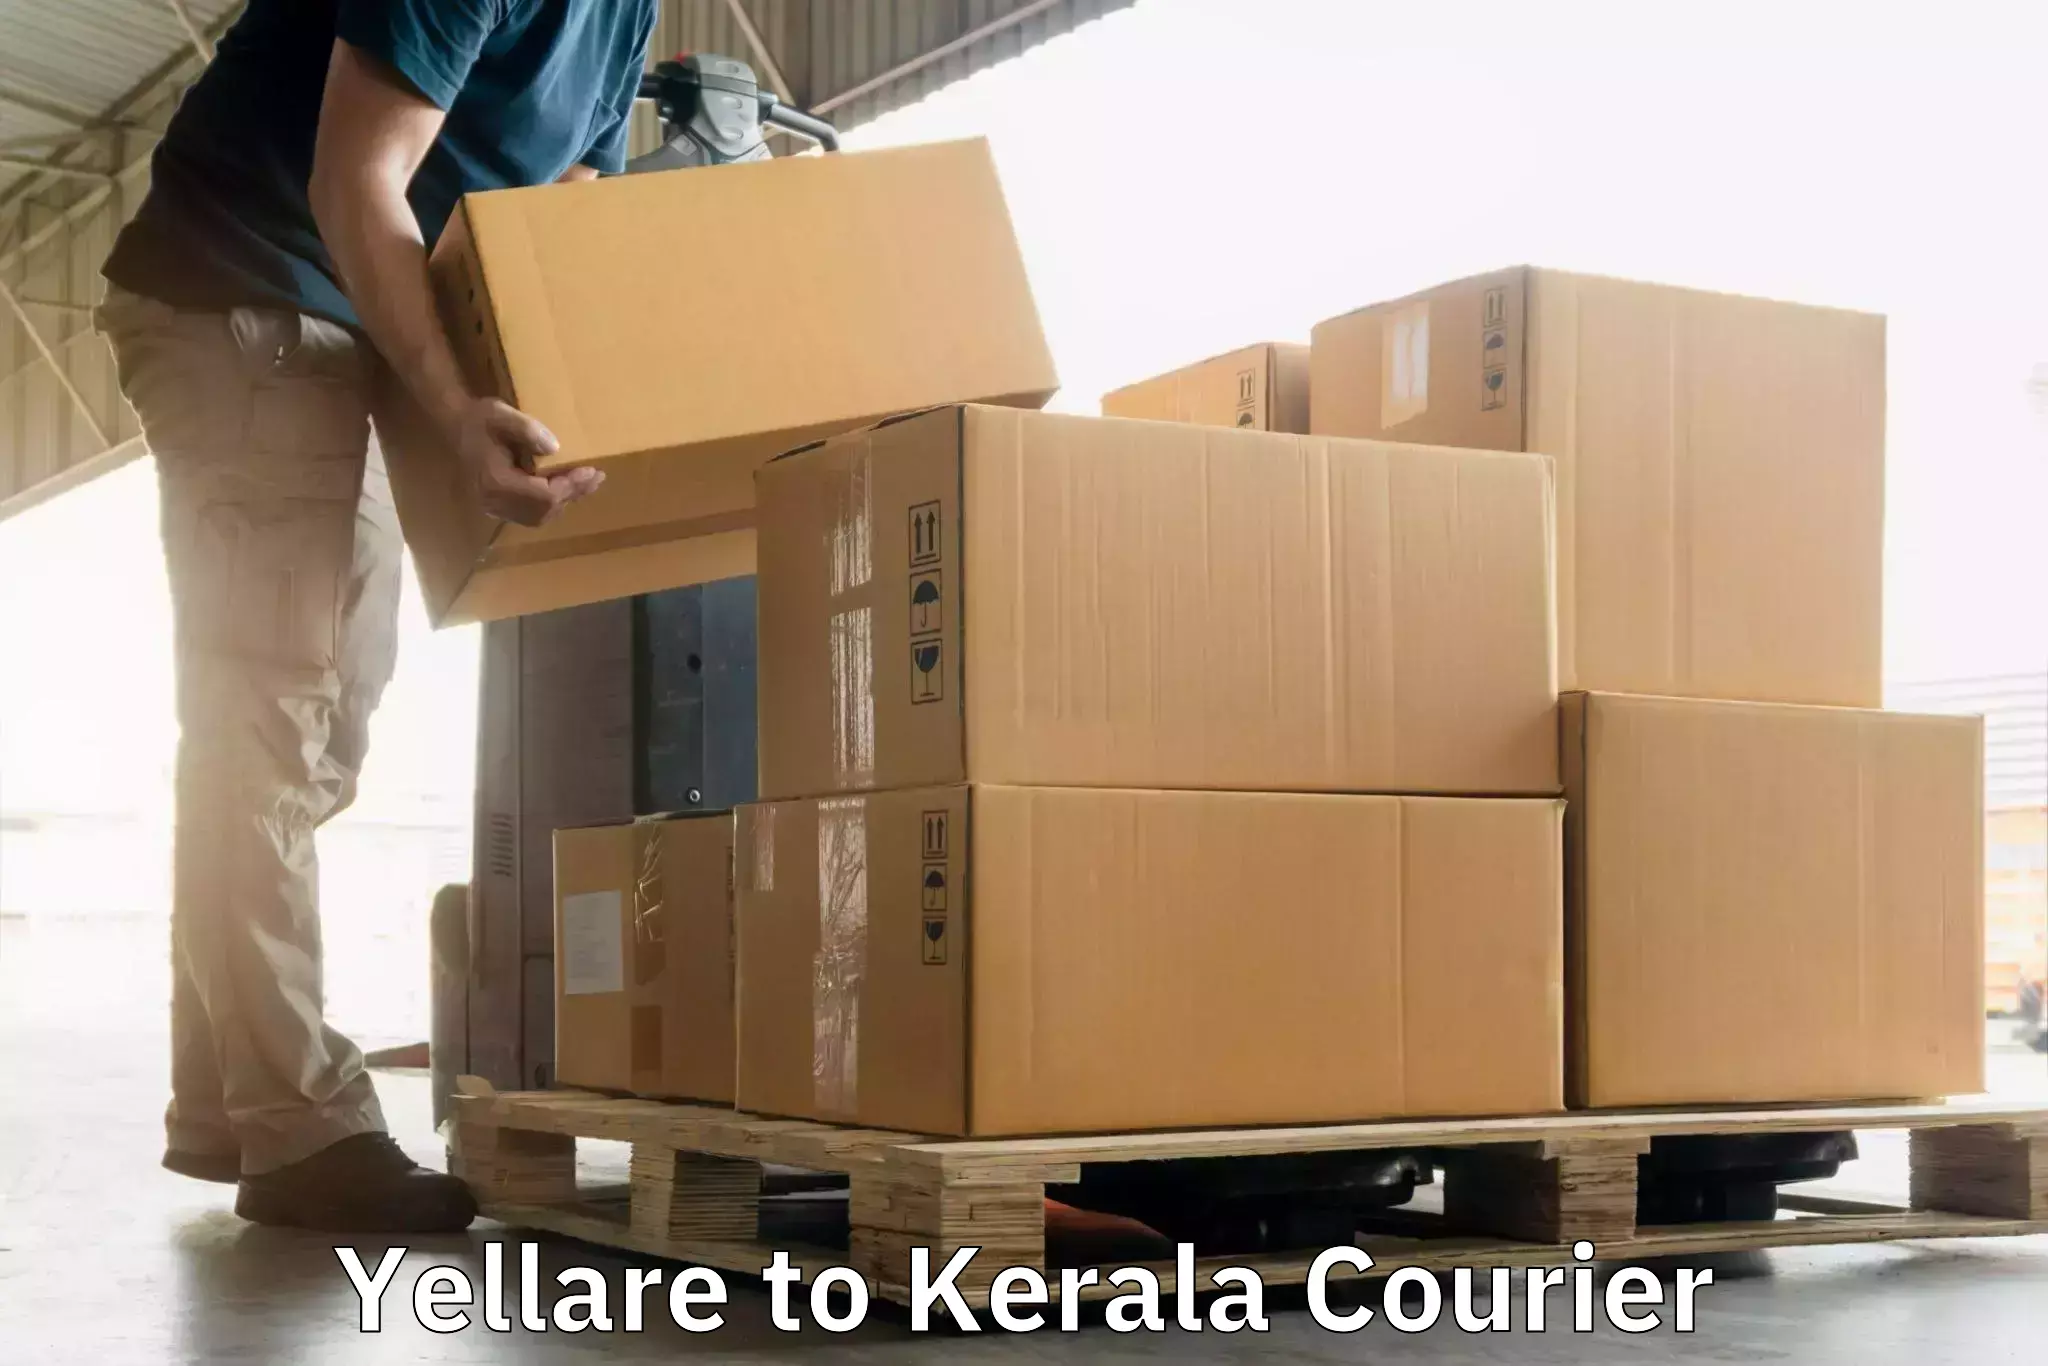 Versatile courier options Yellare to Koothattukulam